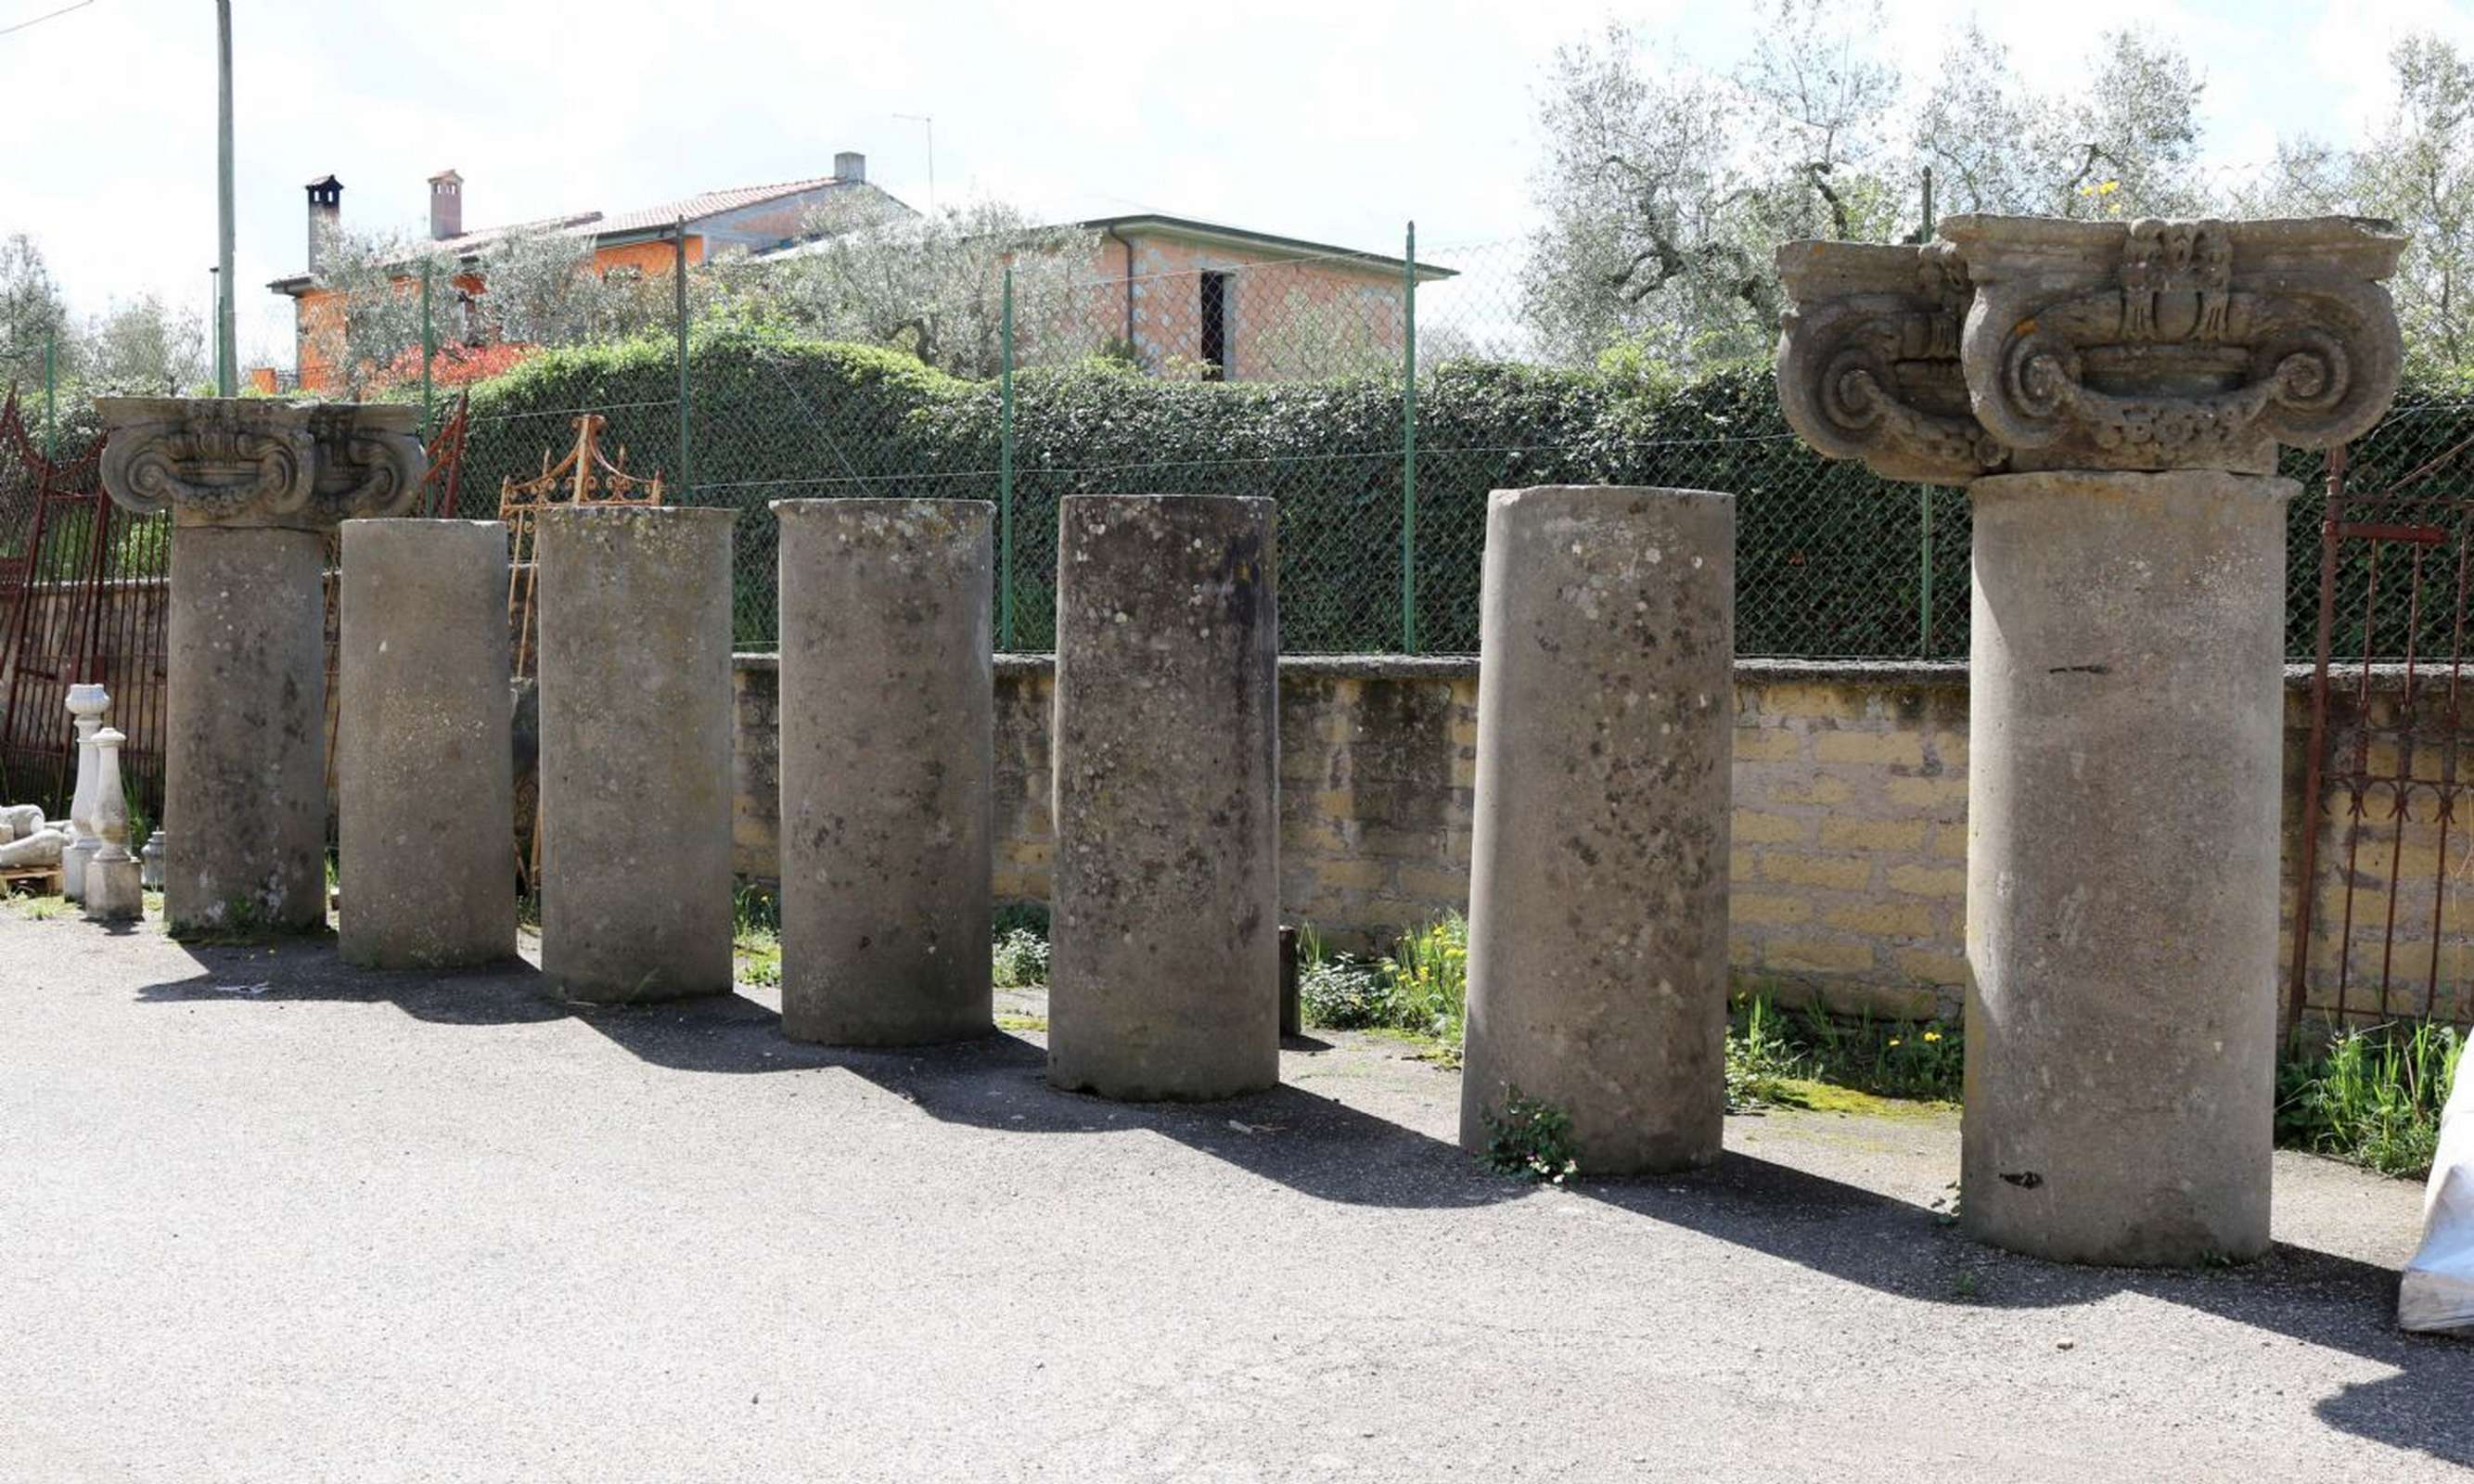 Antiche colonne in pietra da muro. Epoca 1500. - Colonne antiche - Architettura - Prodotti - Antichità Fiorillo